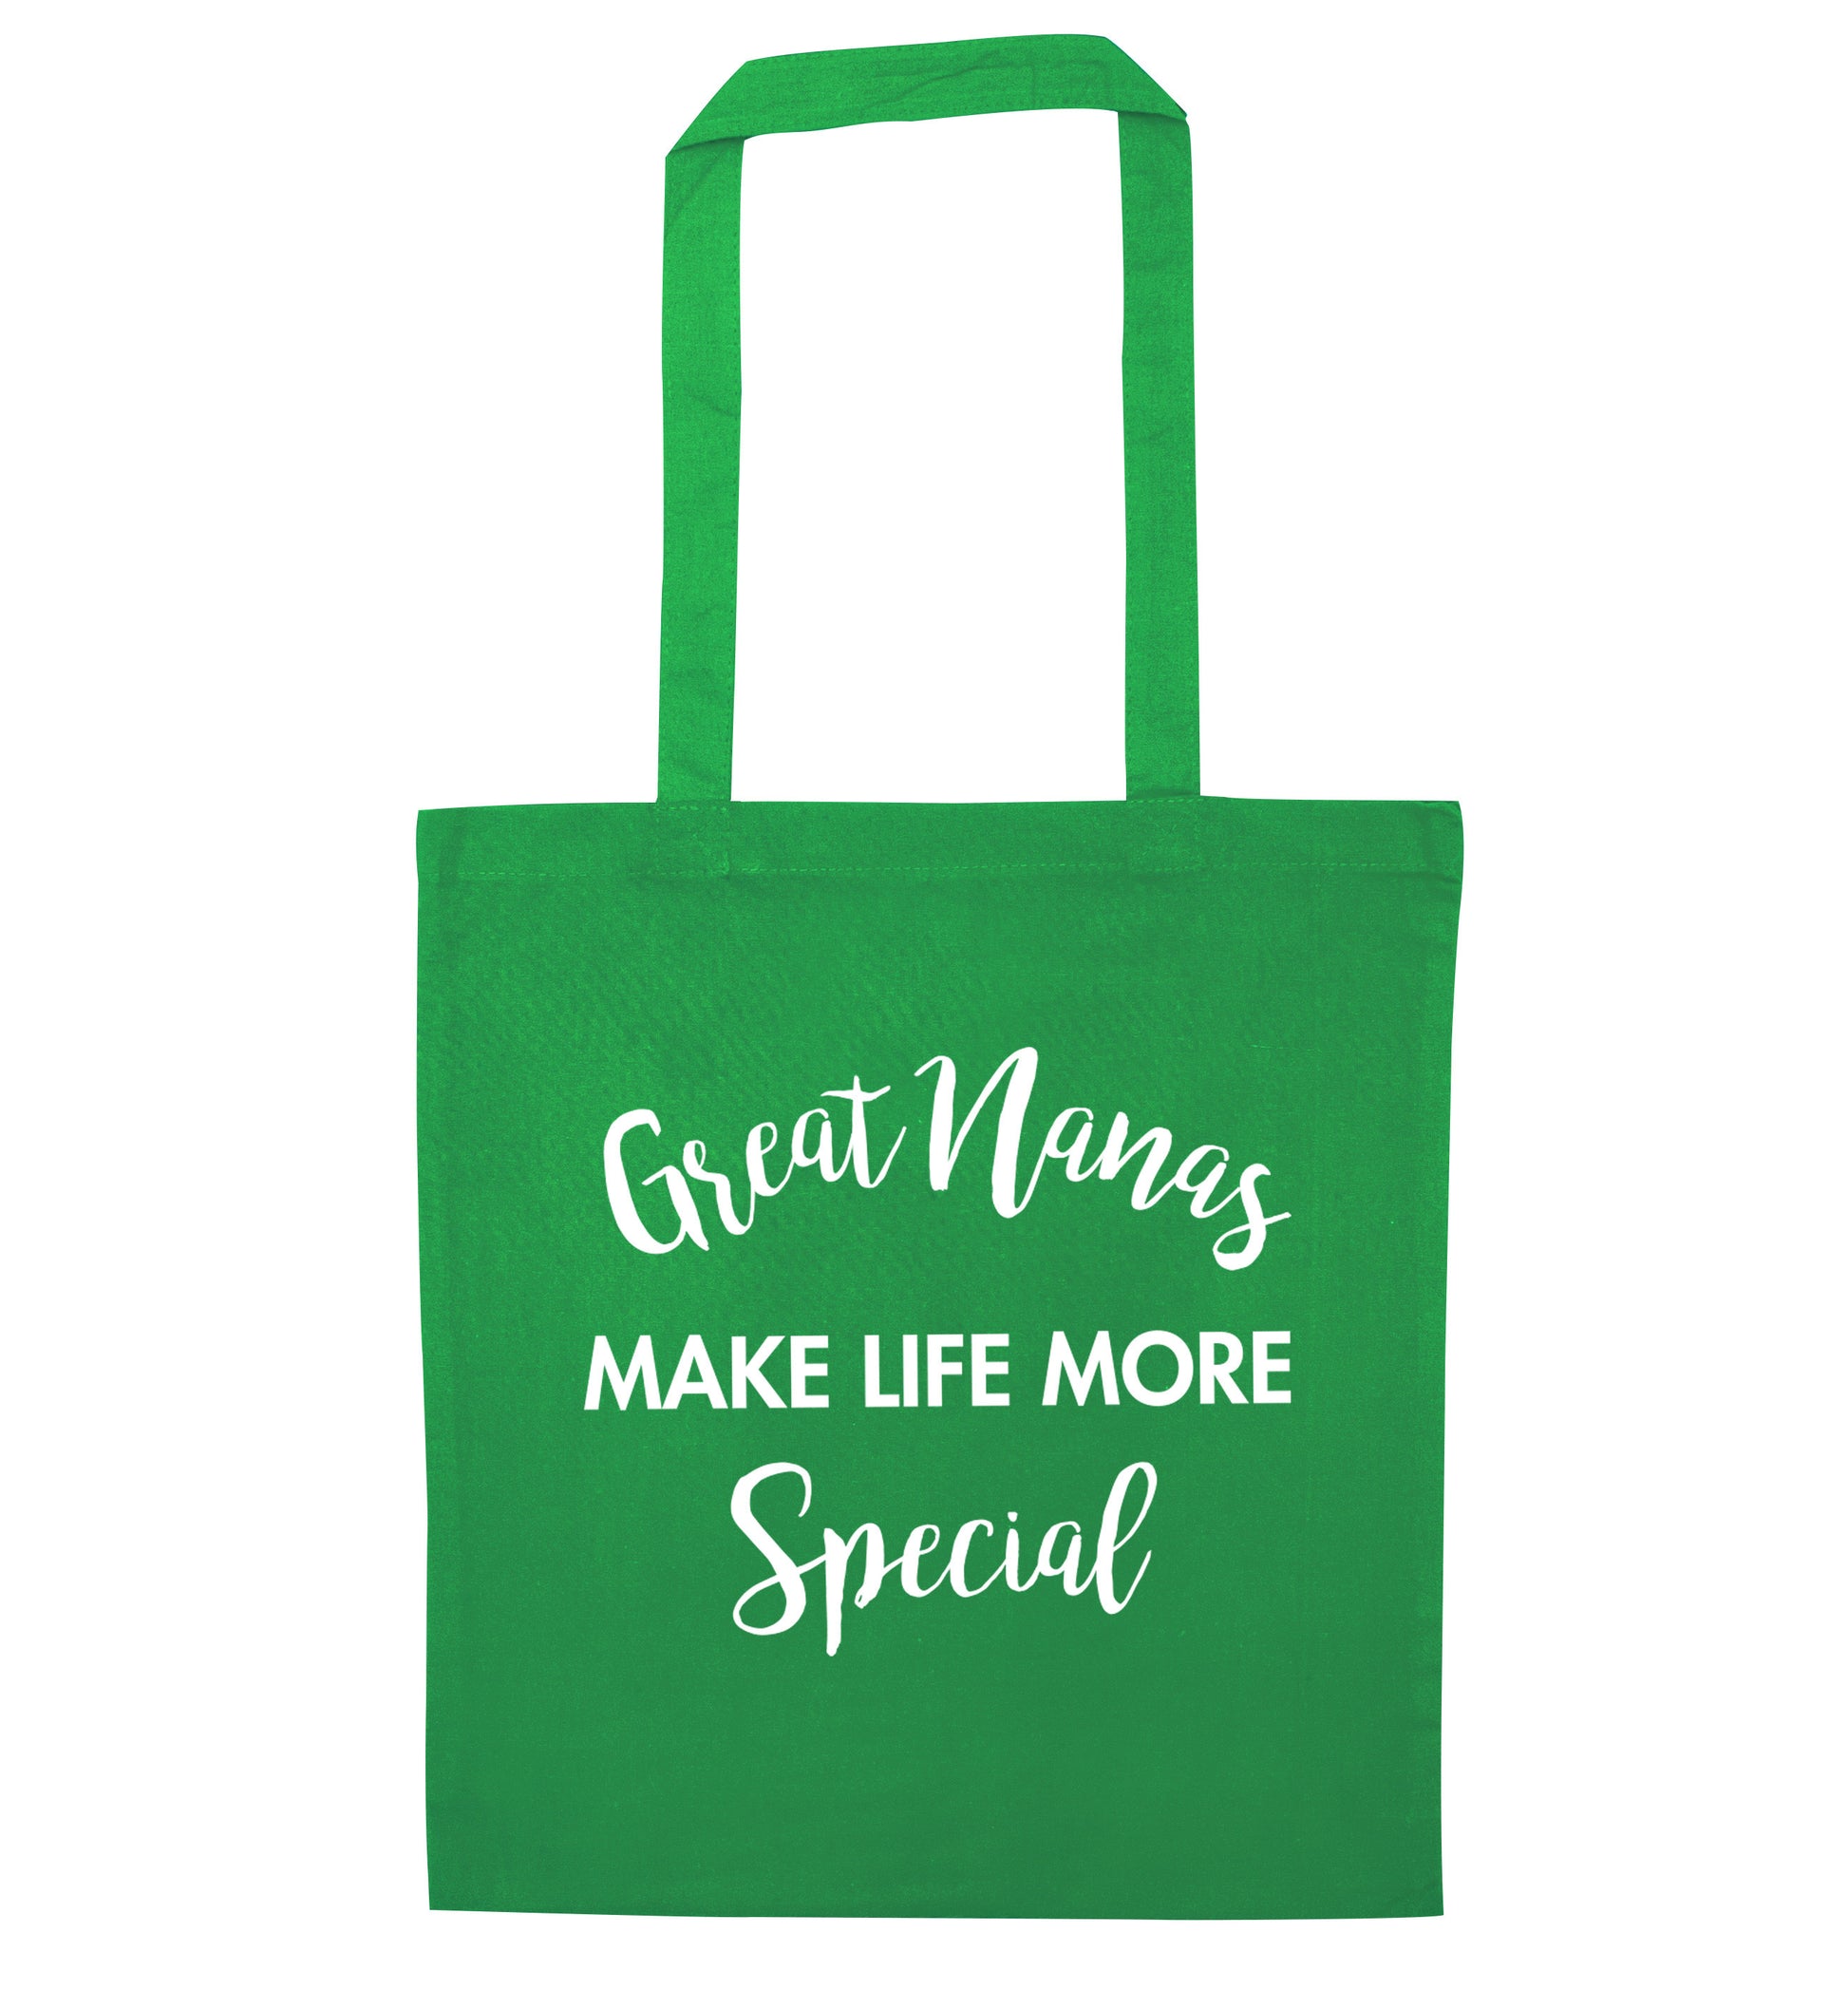 Great nanas make life more special green tote bag